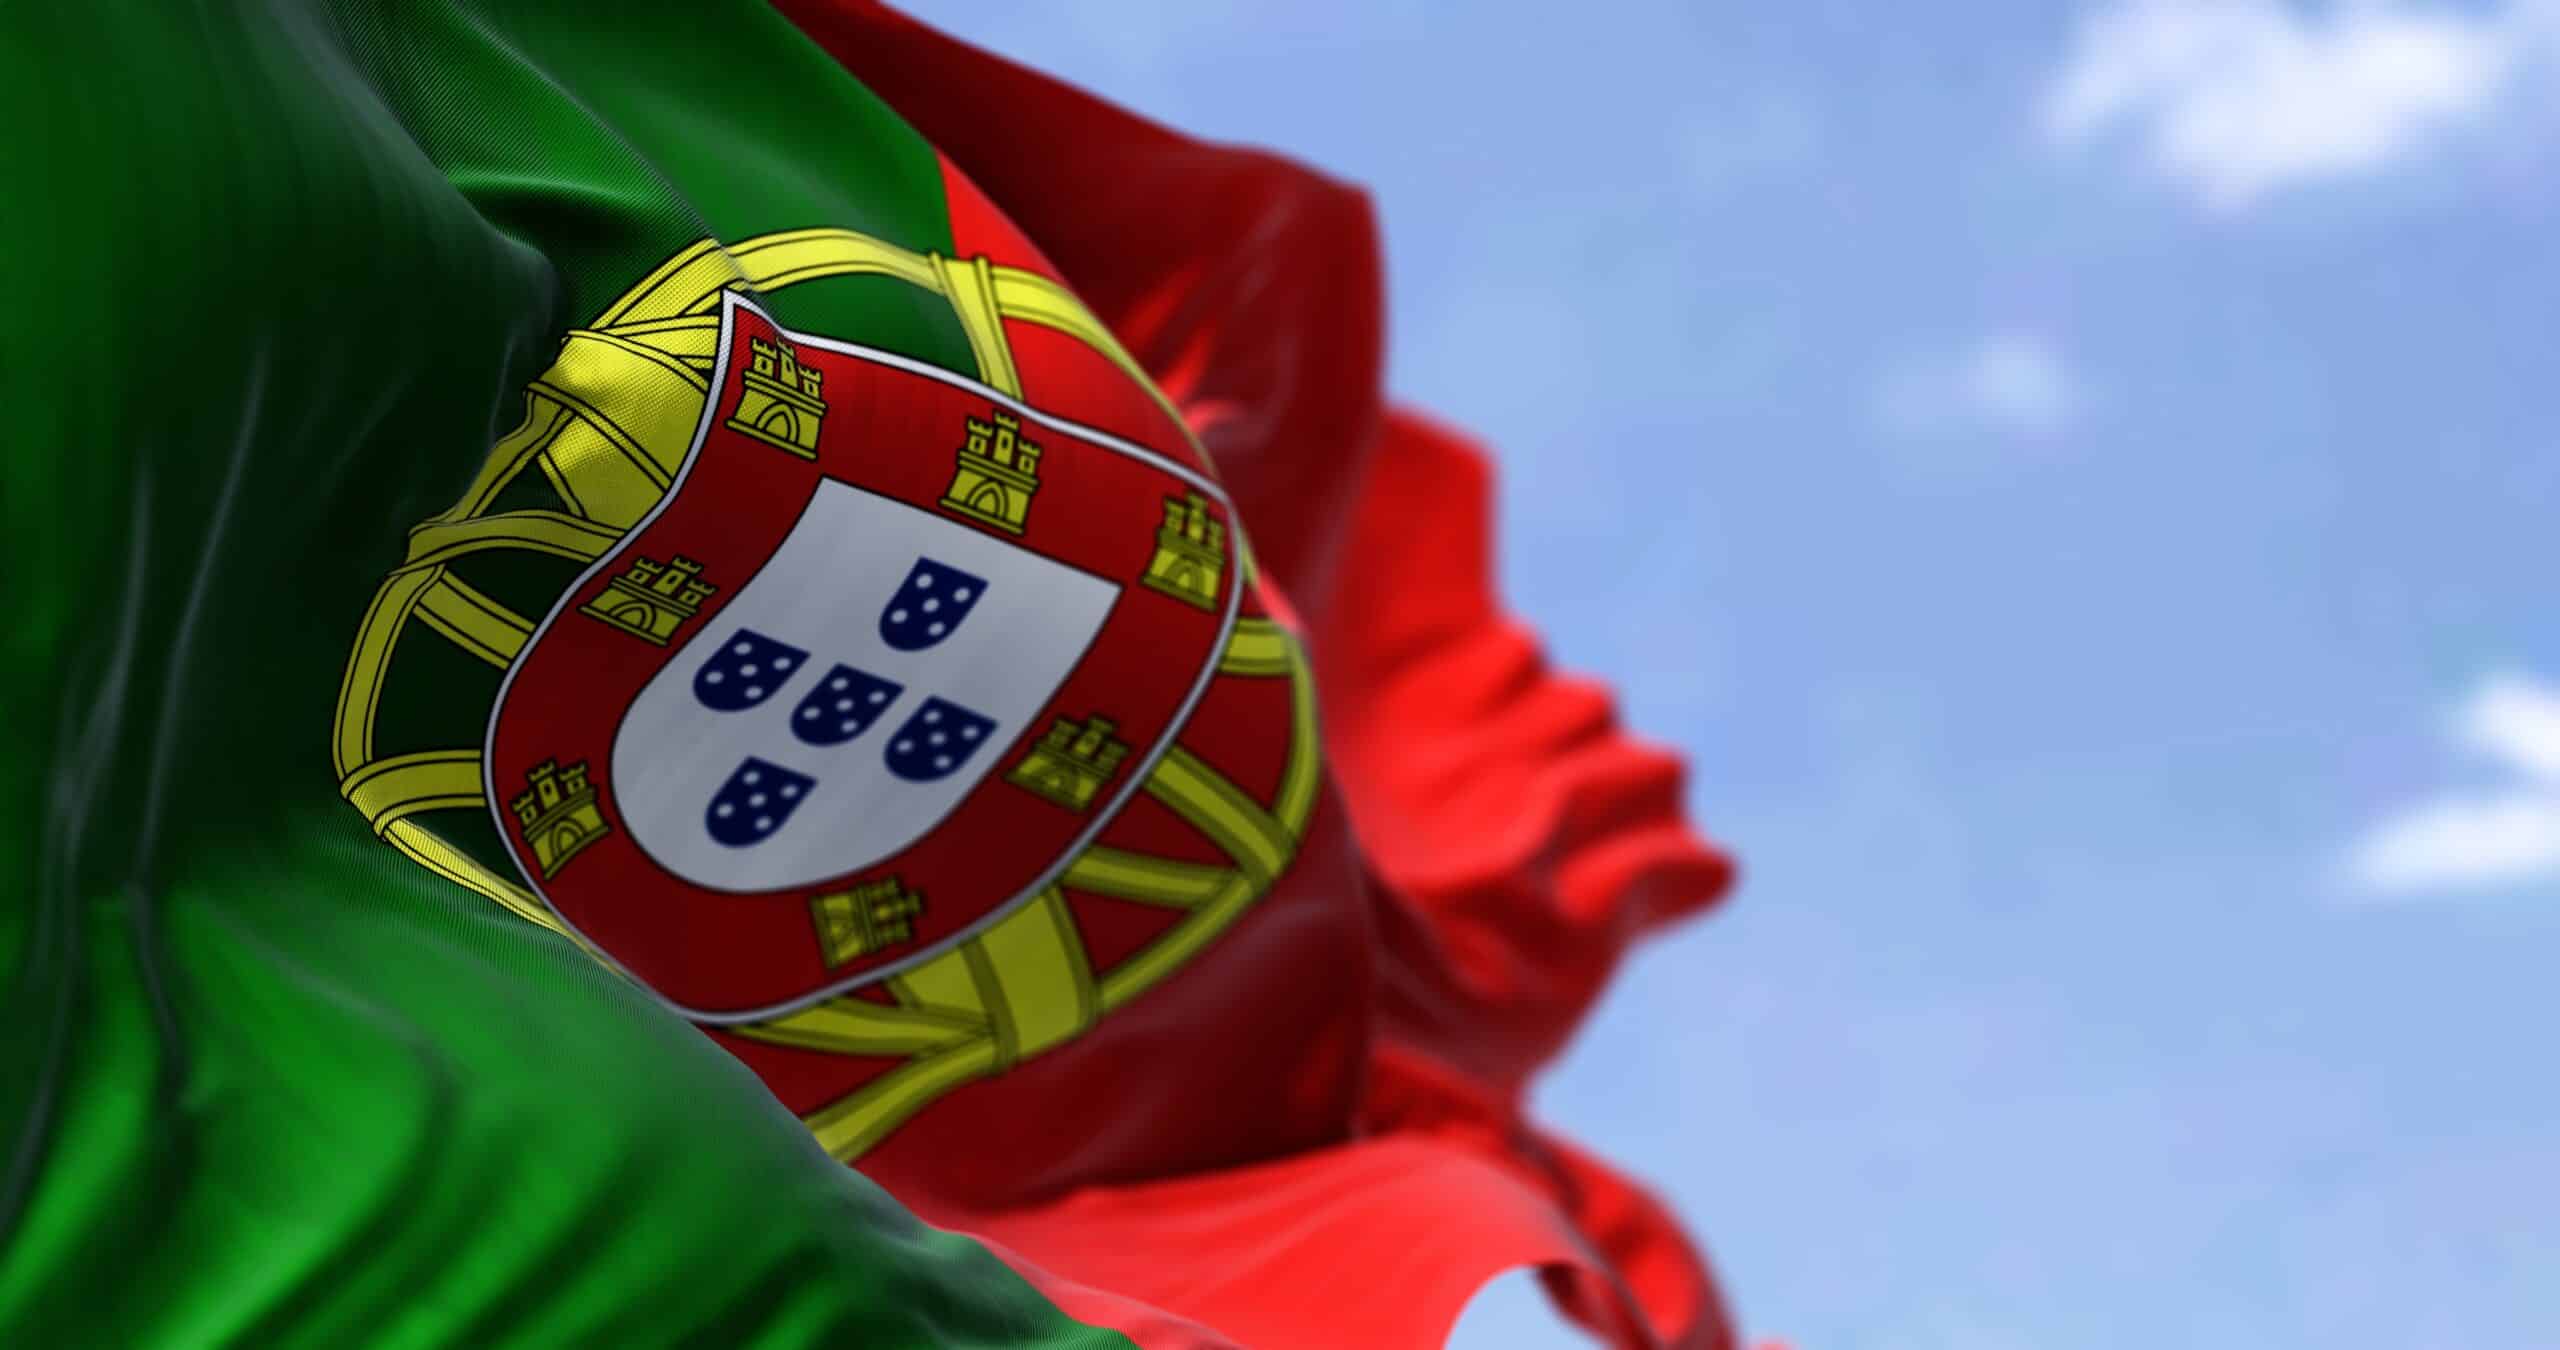 Détail du drapeau national du Portugal